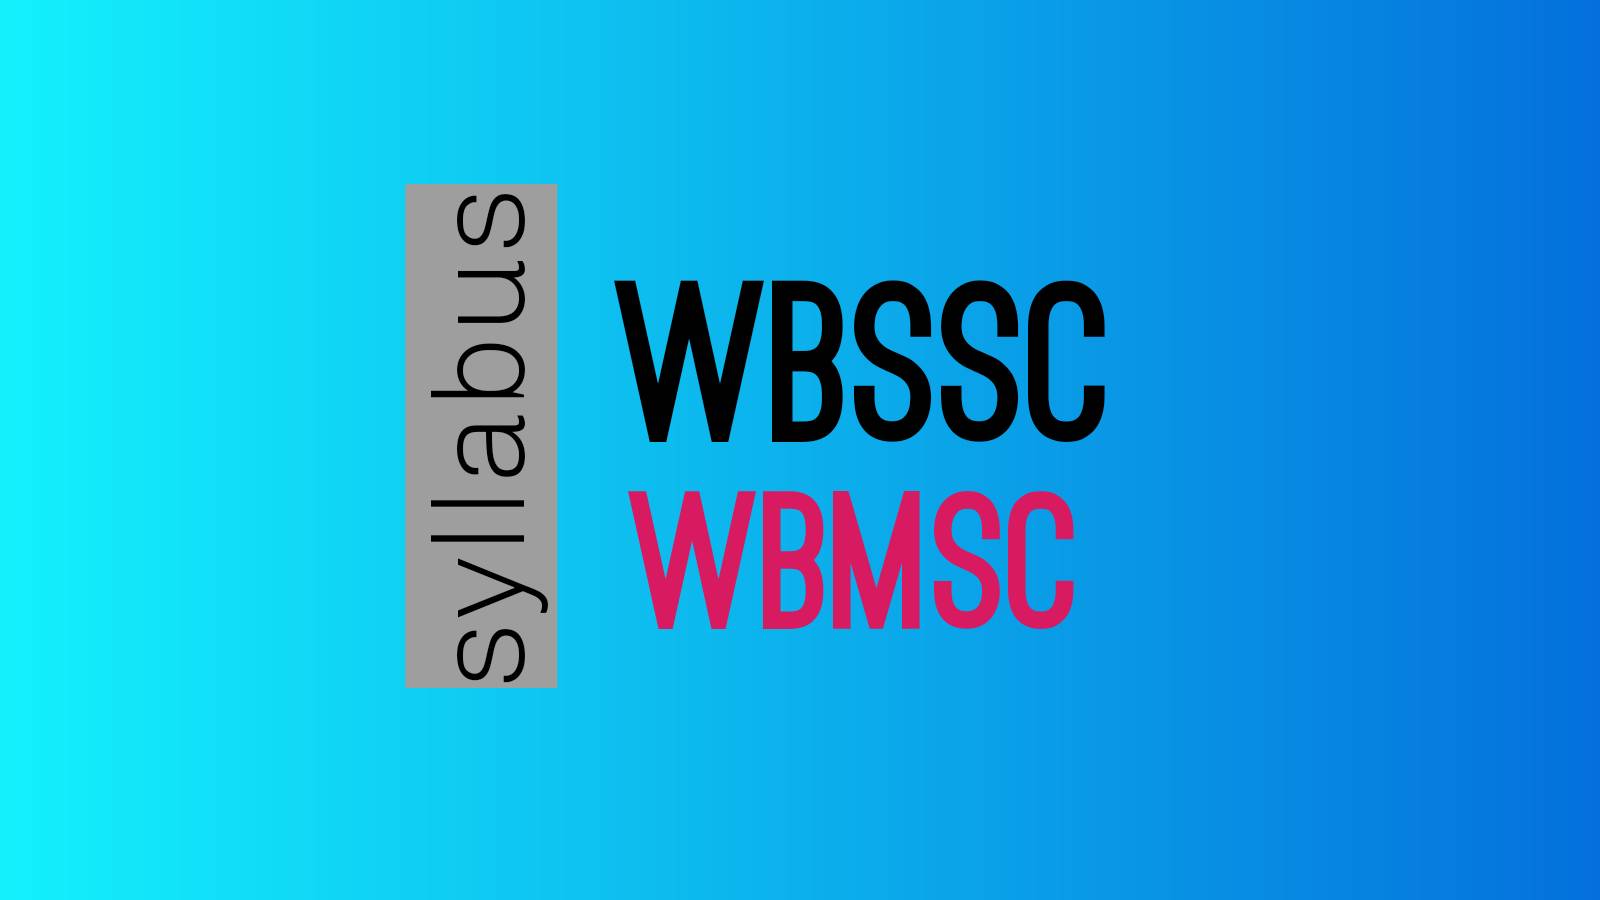 WBSSC (SLTST) Syllabus |WBMSC Syllabus